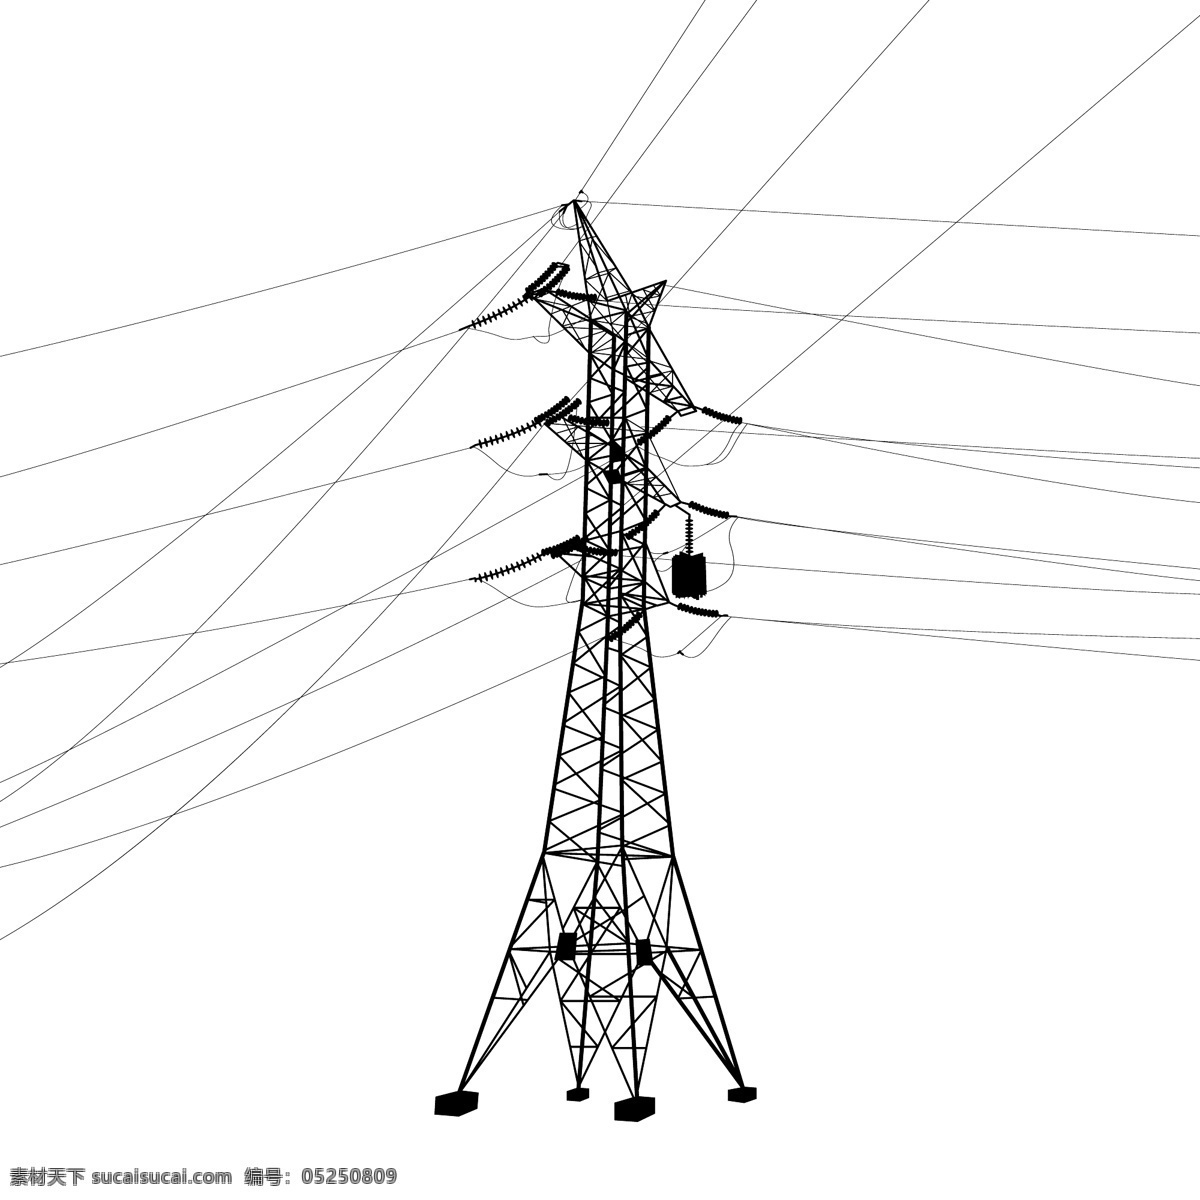 电力输送塔 输电塔 高压输电塔 电力输送 电线杆 工业生产 生活百科 矢量素材 白色